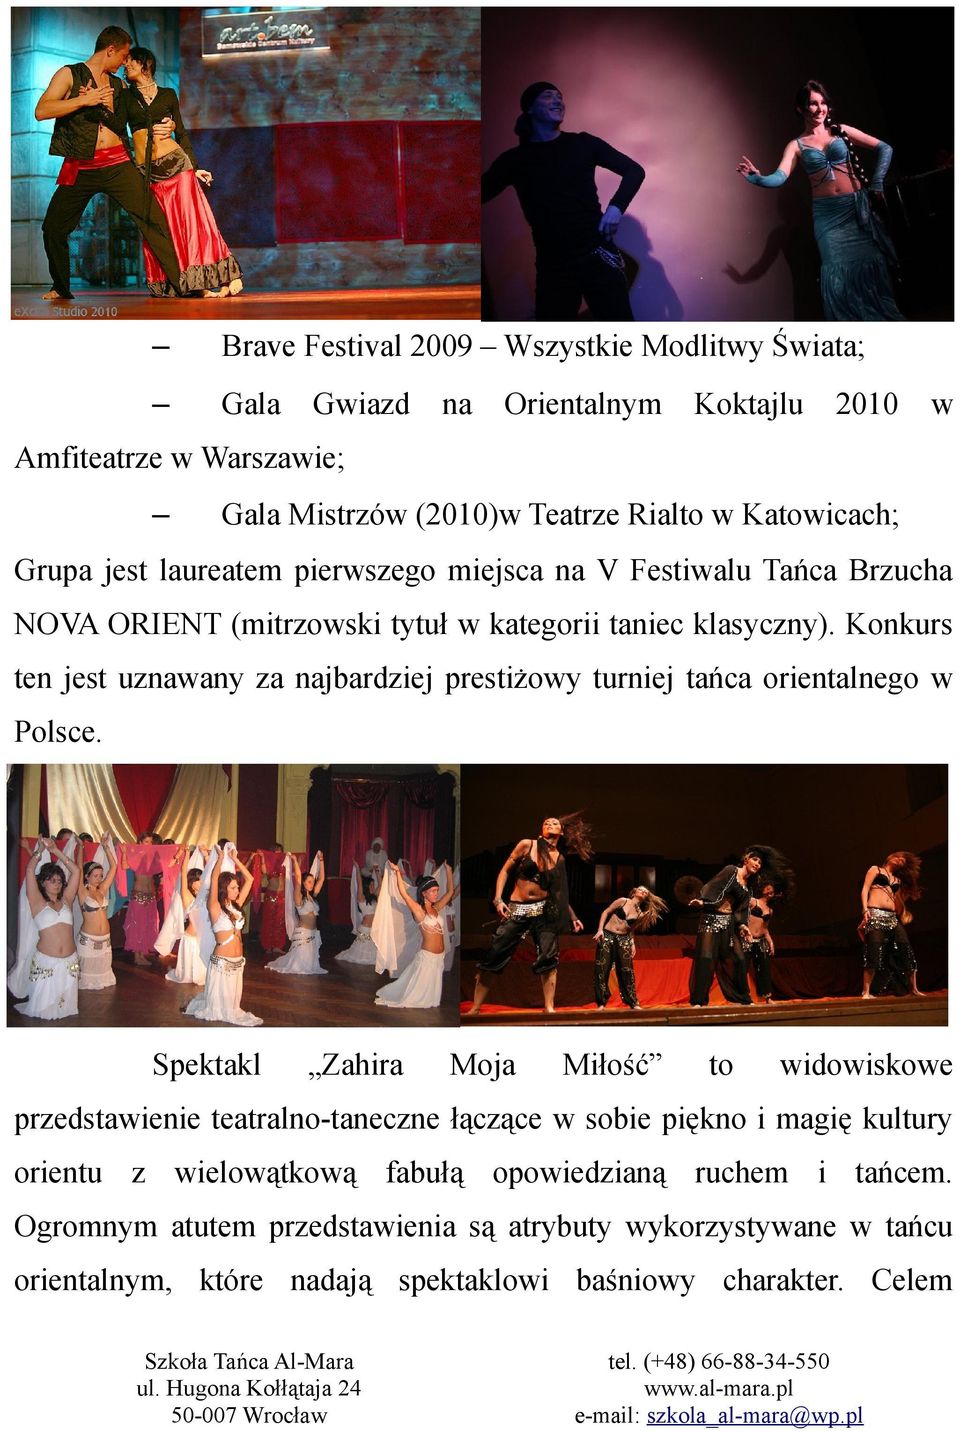 Konkurs ten jest uznawany za najbardziej prestiżowy turniej tańca orientalnego w Polsce.